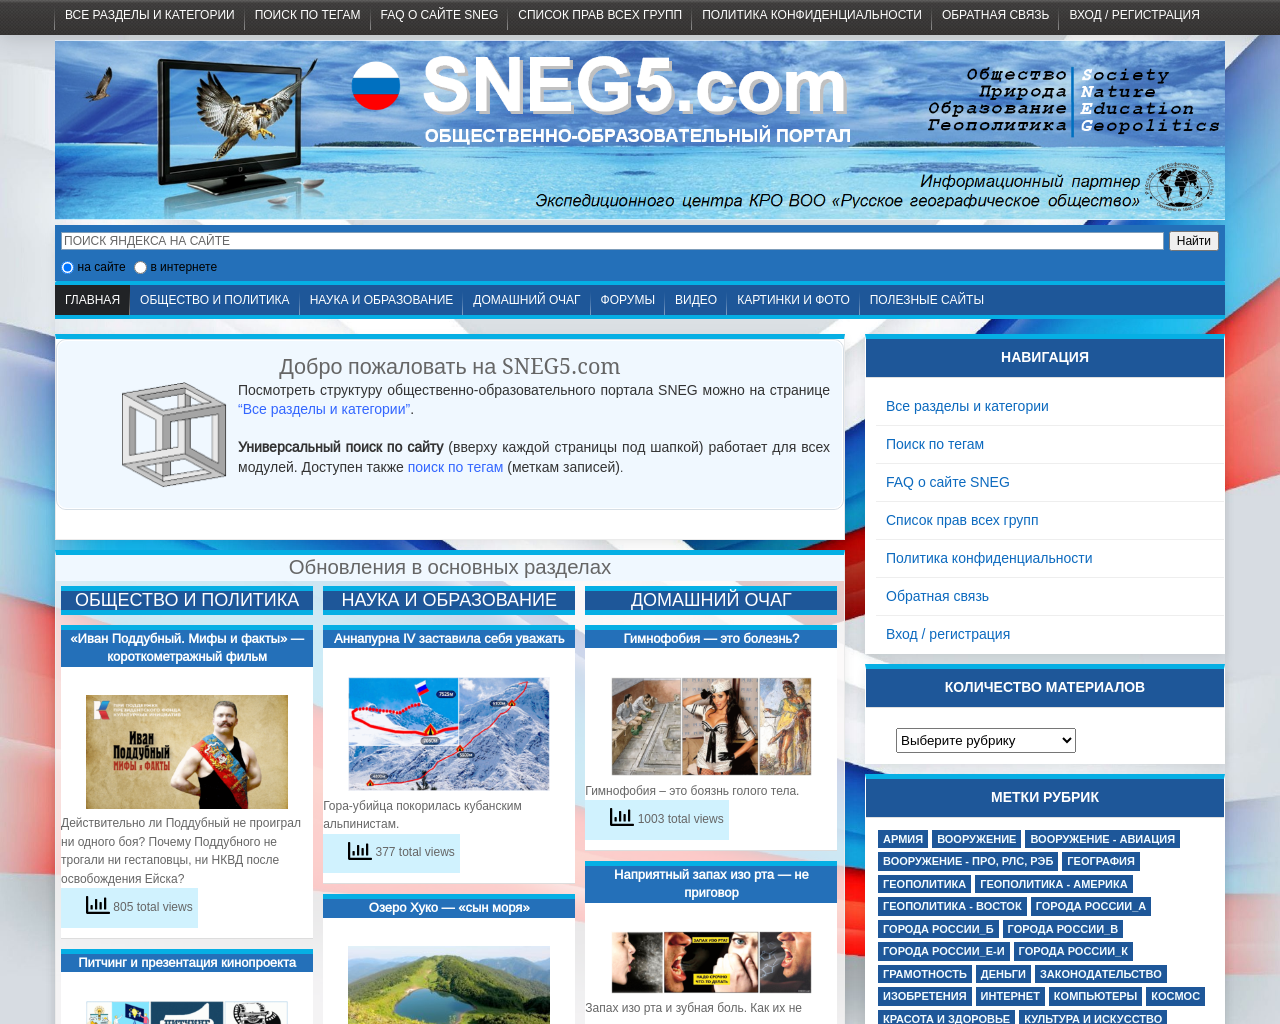 sneg5.com